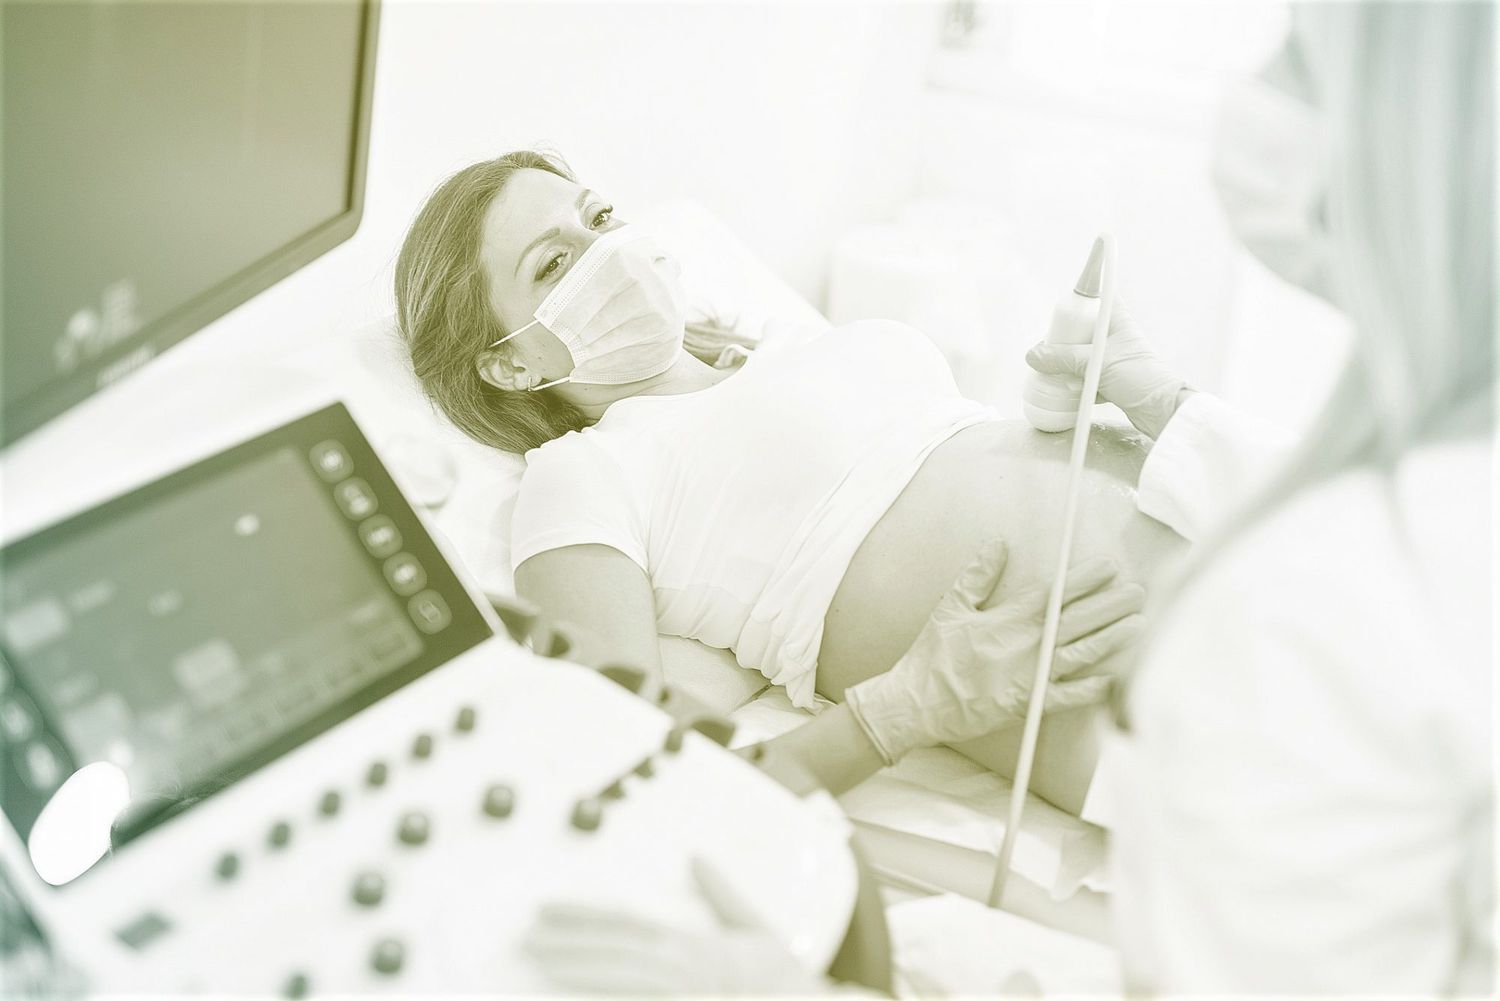 Los CDC emiten un aviso "urgente" para que las embarazadas se vacunen ya contra la COVID-19